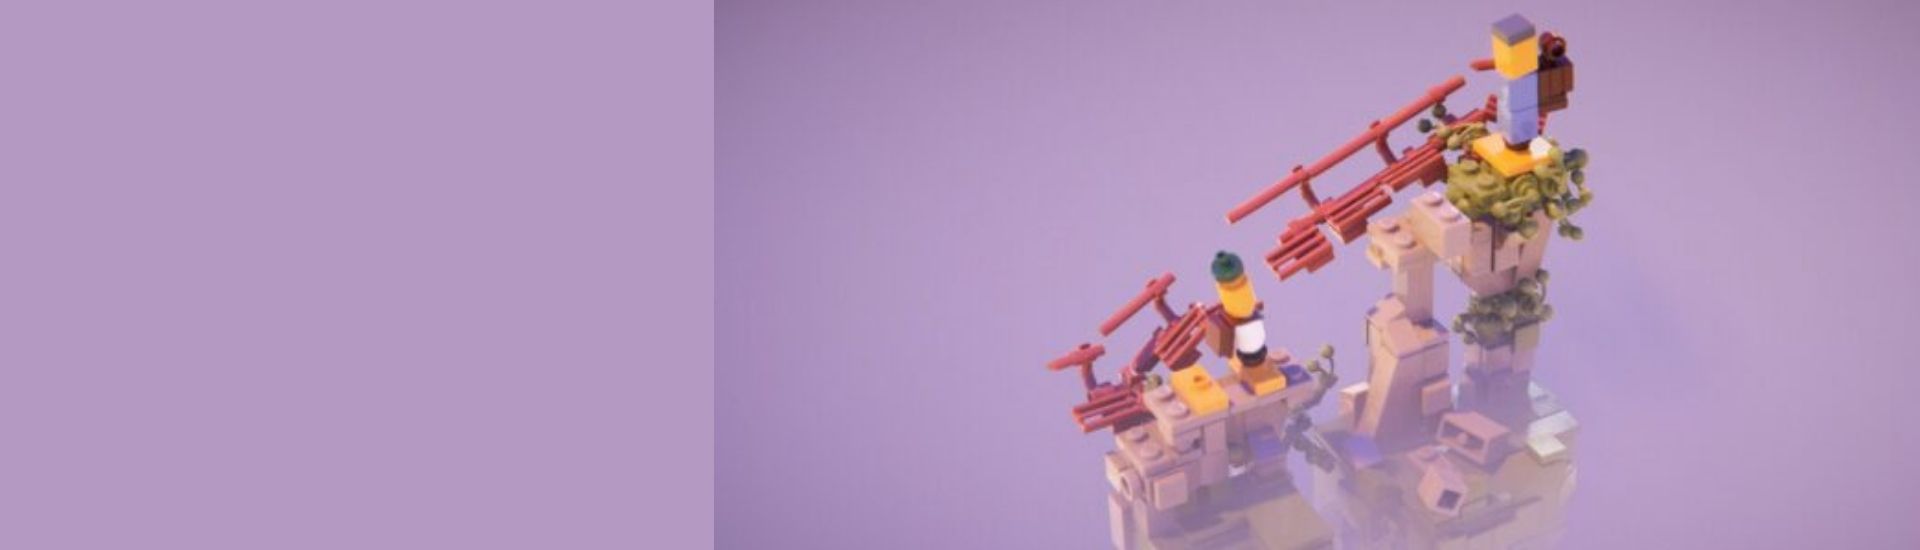 Imagen de LEGO Builder’s Journey, un videojuego que puede ayudar a desarrollar habilidades socioemocionales